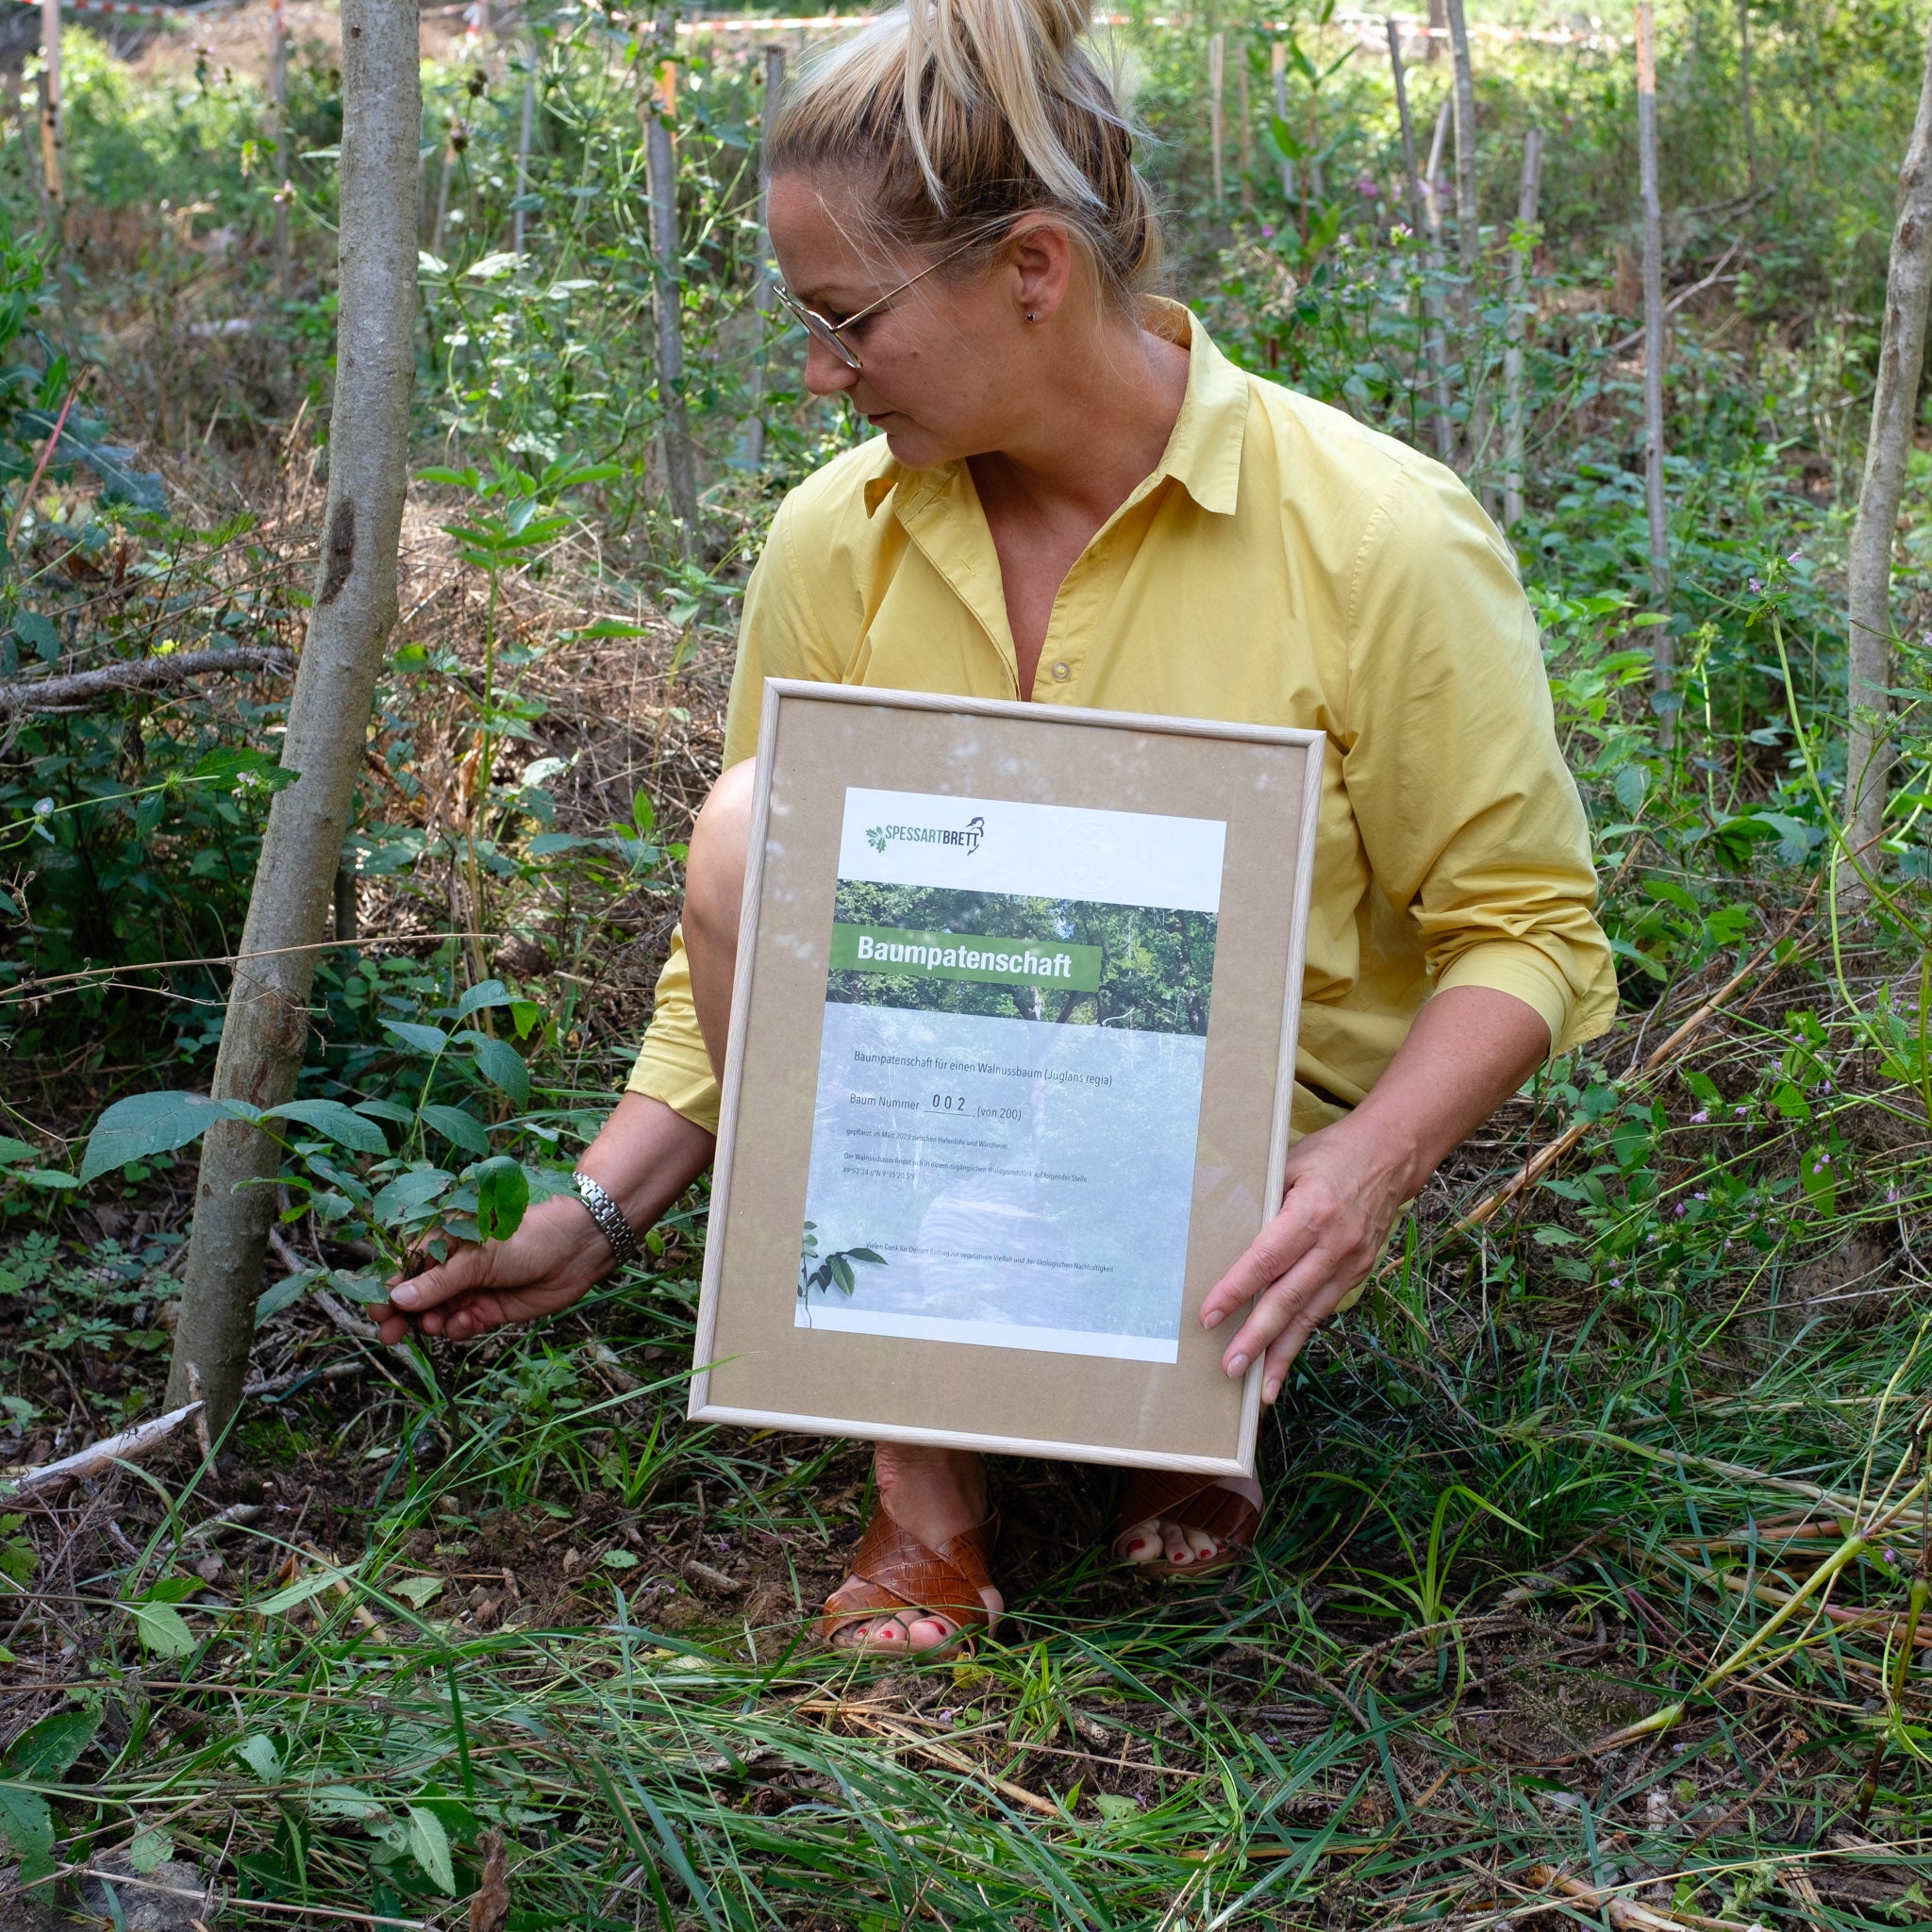 Blonde Frau zeigt eine Urkunde von einer Baumpatenschaft im Spessart Wald.